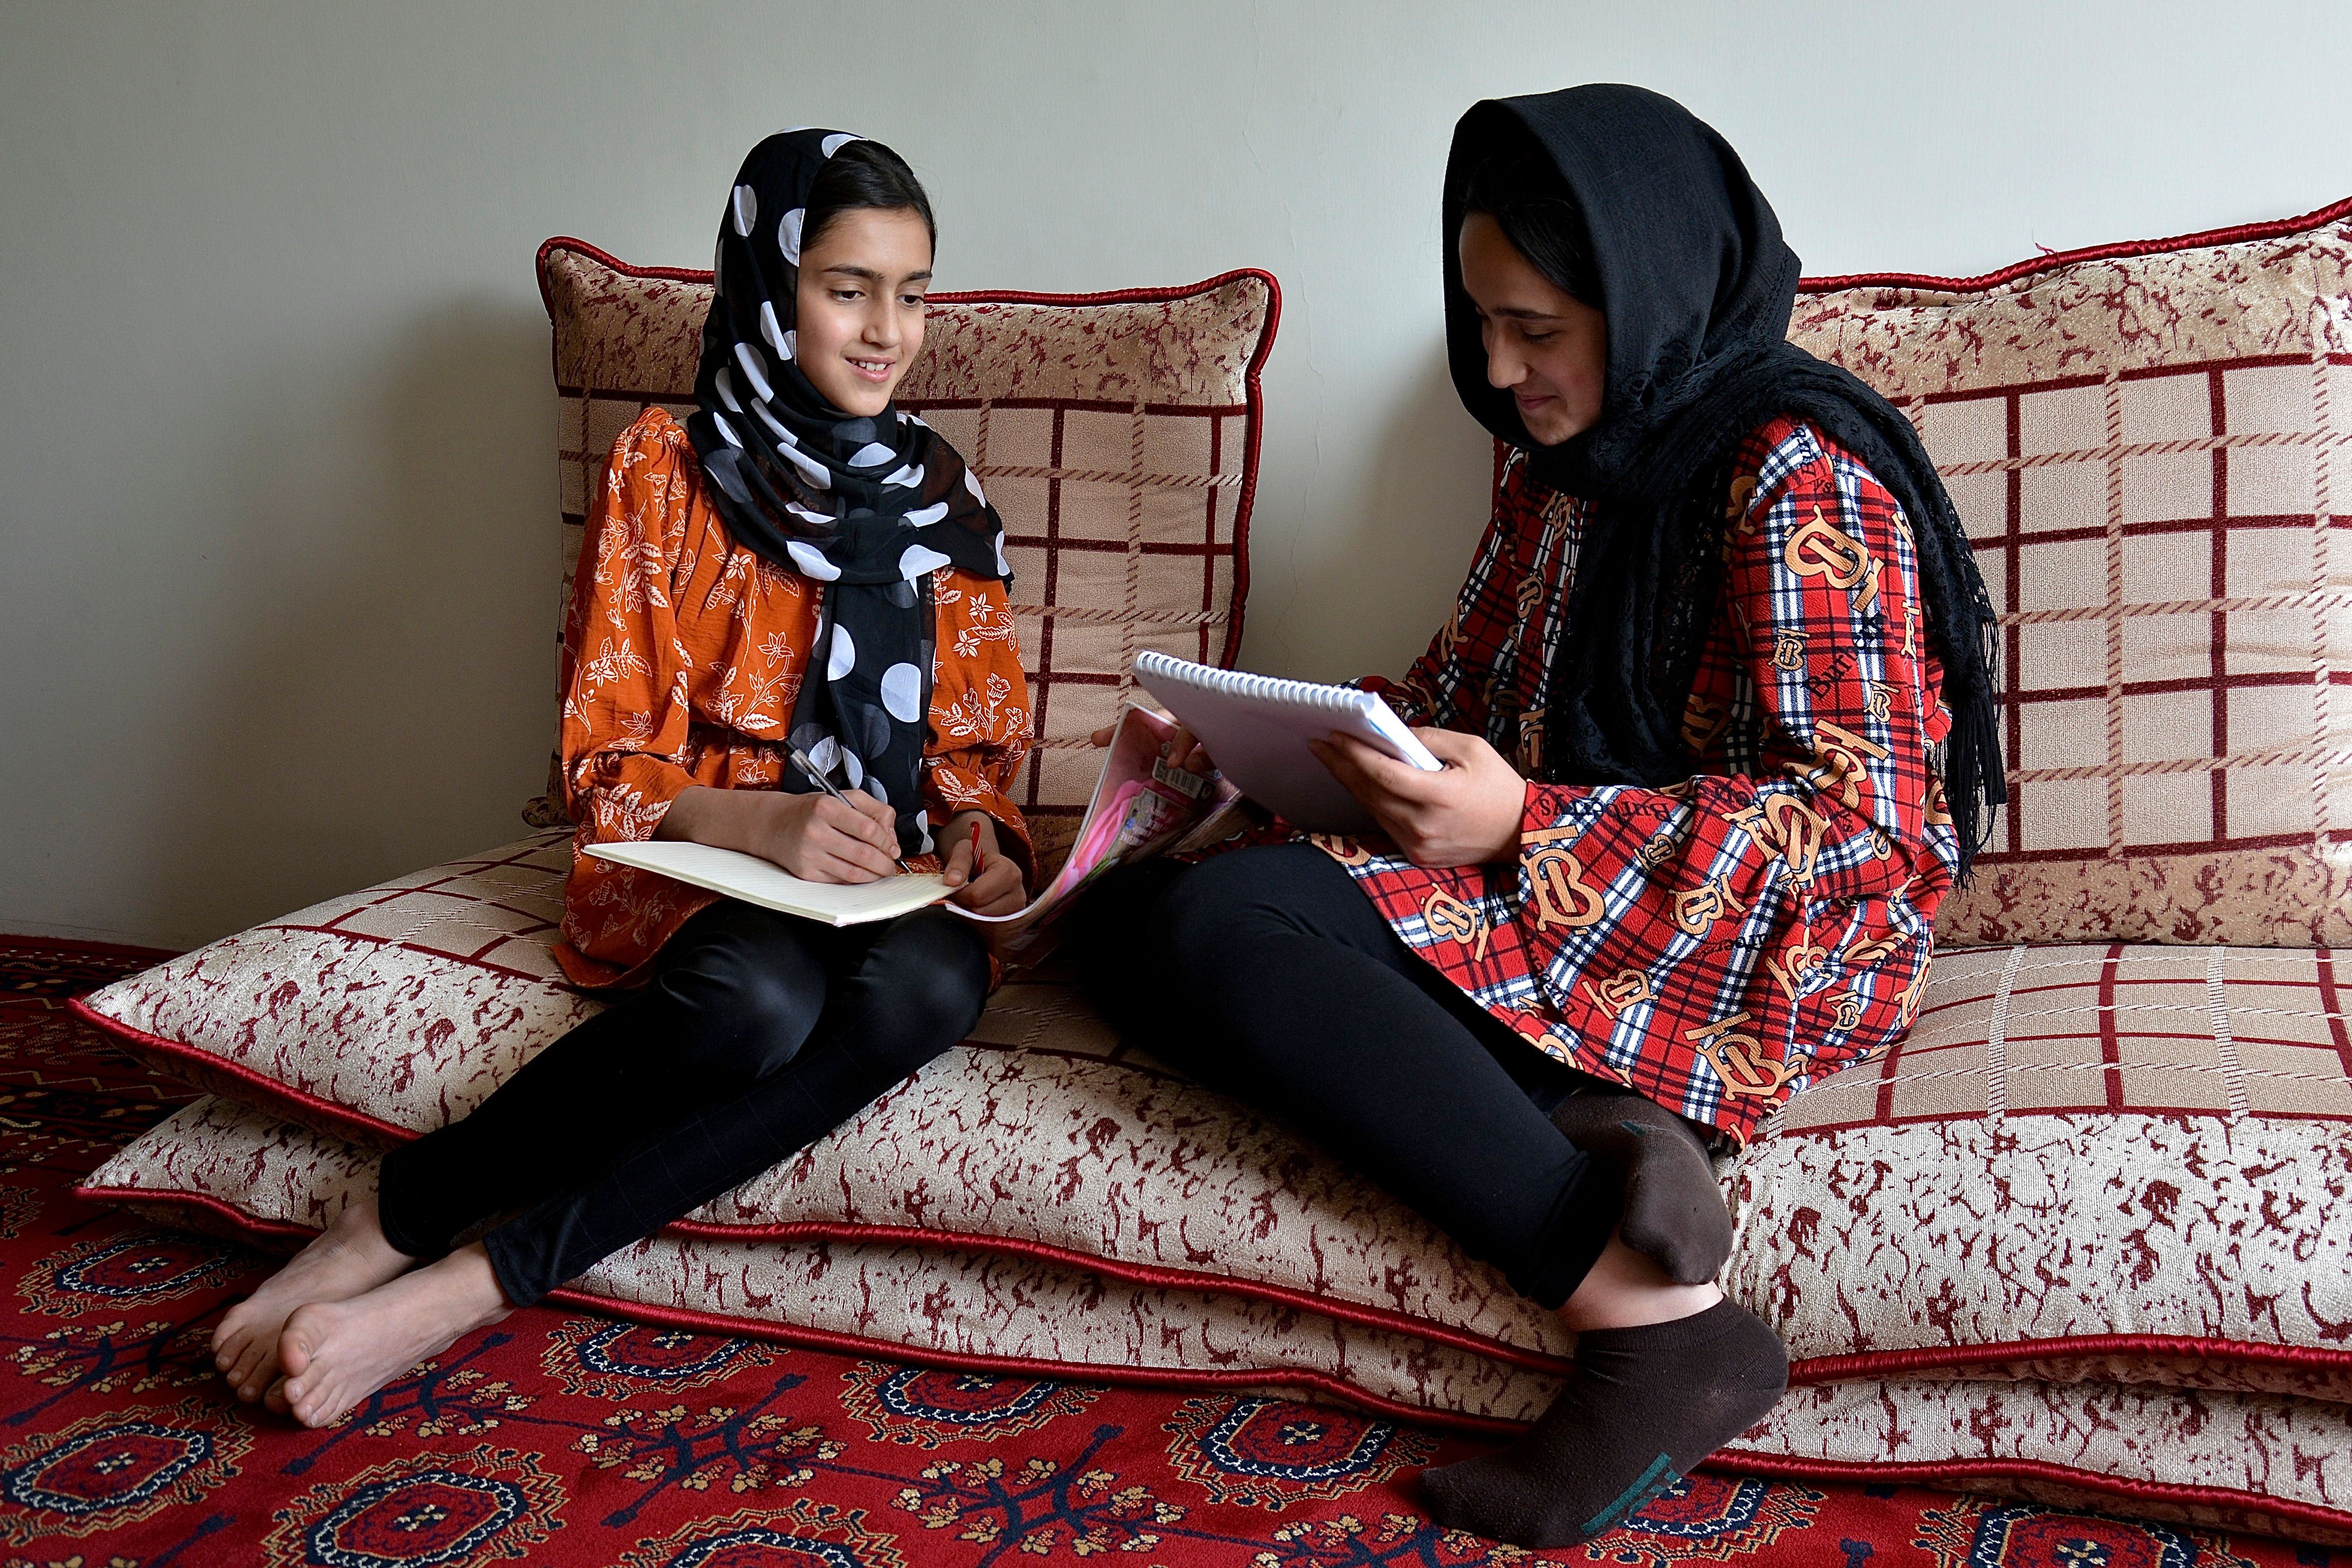 منسوب التحدي يرتفع بوجه زعيم طالبان.. حقاني:منع تعليم الفتيات مؤقت!
